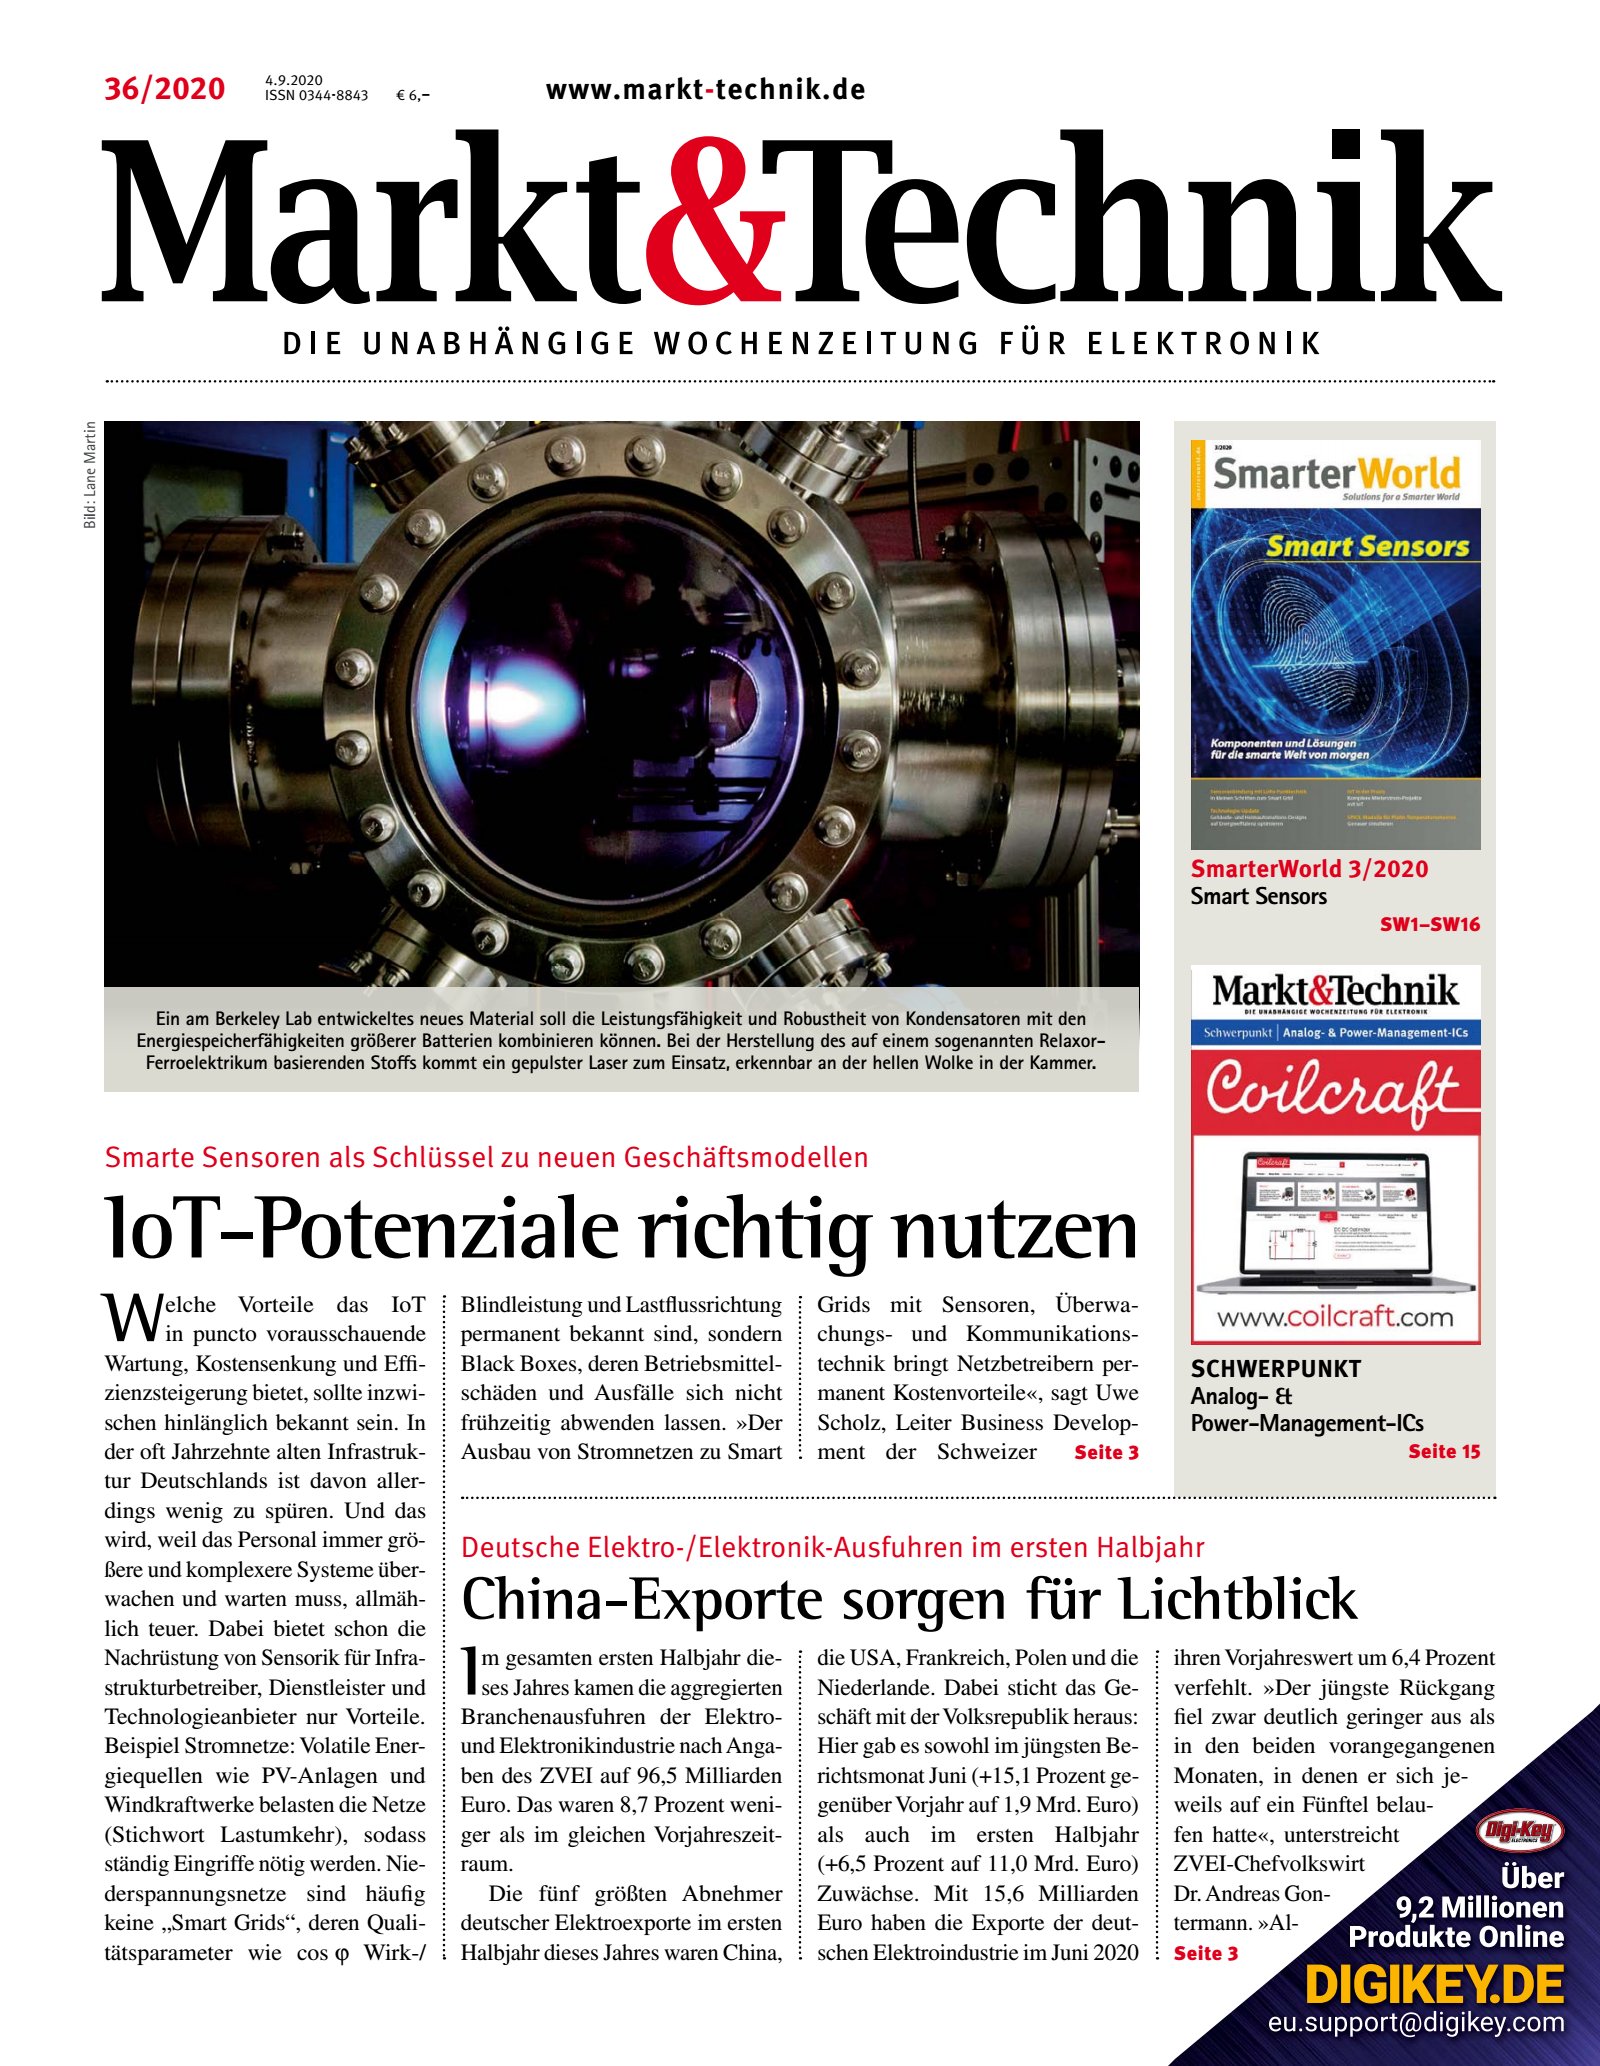 Markt&Technik 36/2020 Digital